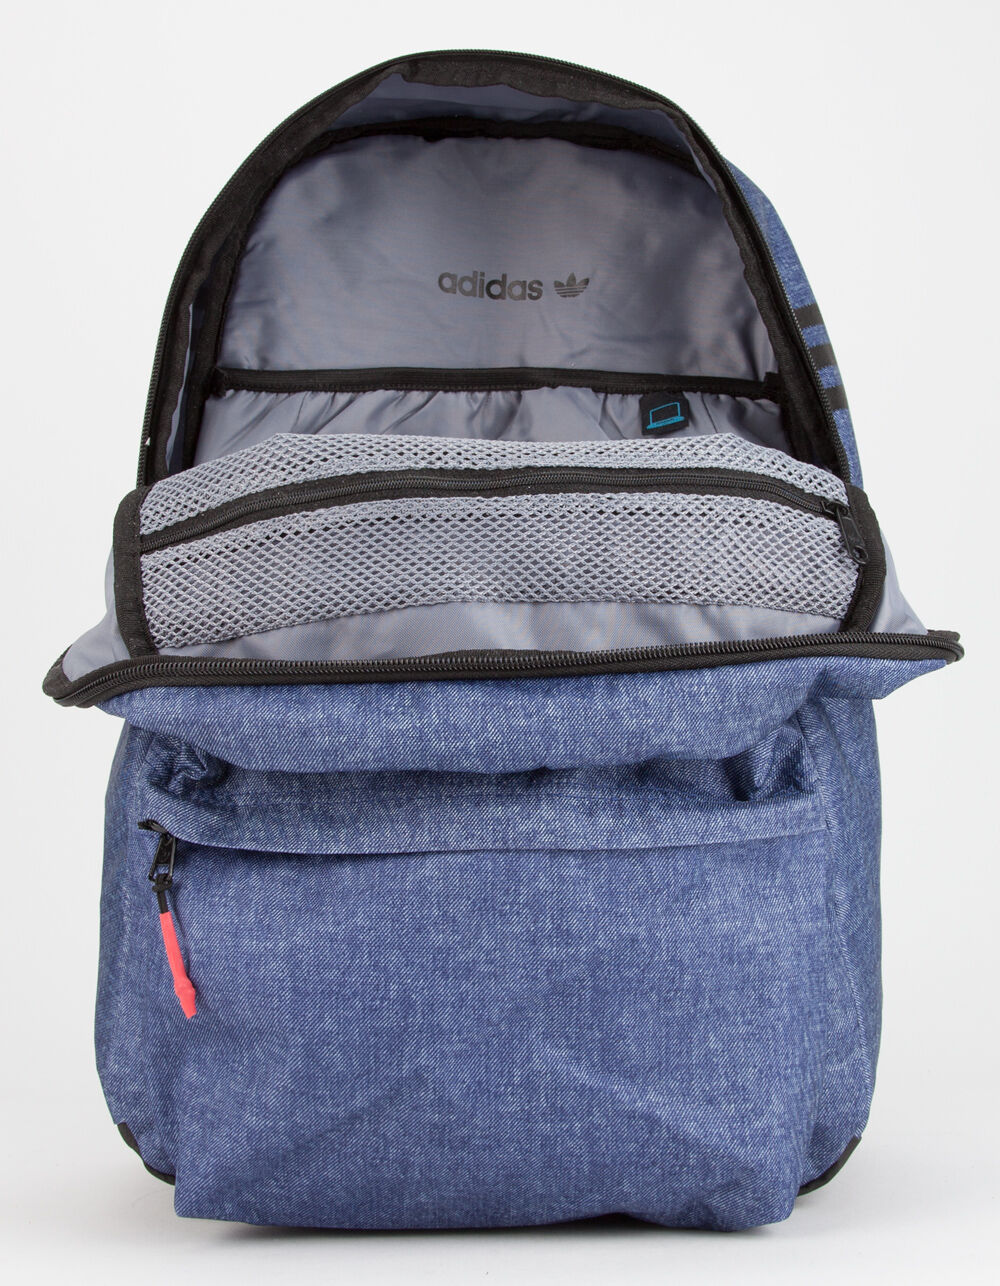 ADIDAS Originals National Blue Denim Backpack image number 4